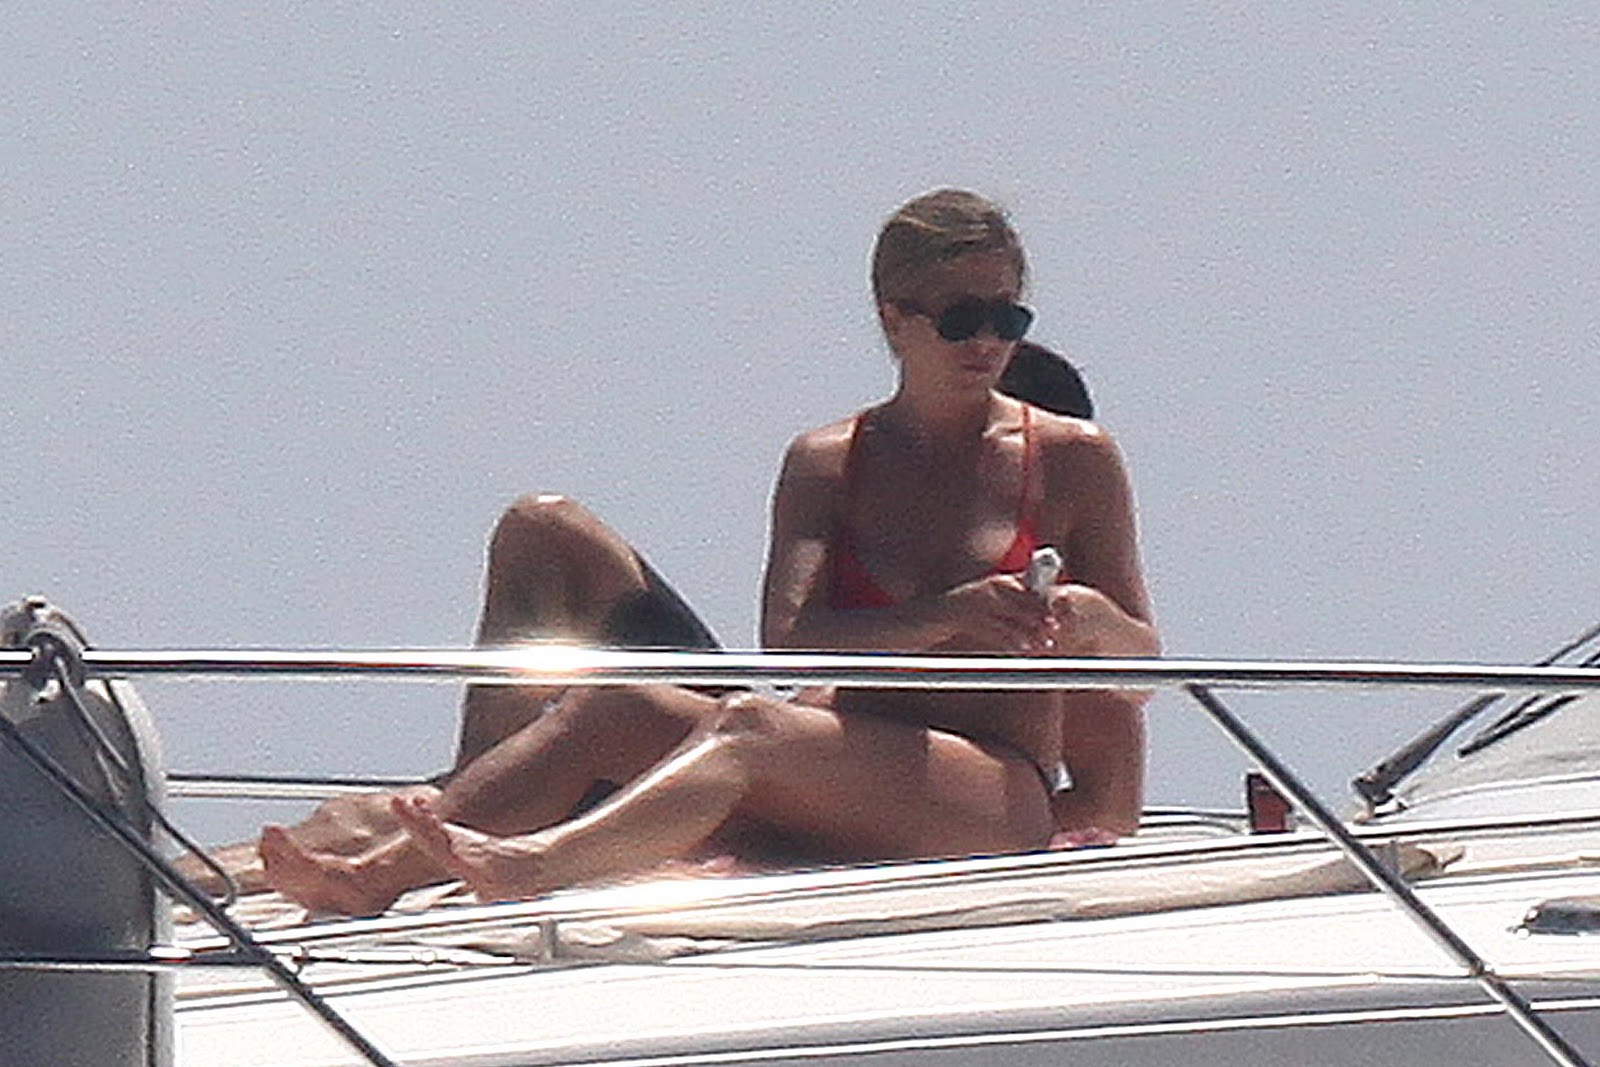 http://1.bp.blogspot.com/-3VsNI4qDRJI/T-SM7AmgckI/AAAAAAAAI44/yLrKvXmR0kU/s1600/Jennifer+Aniston+wearing++Bikini+On+Boat+in+Capri.jpg